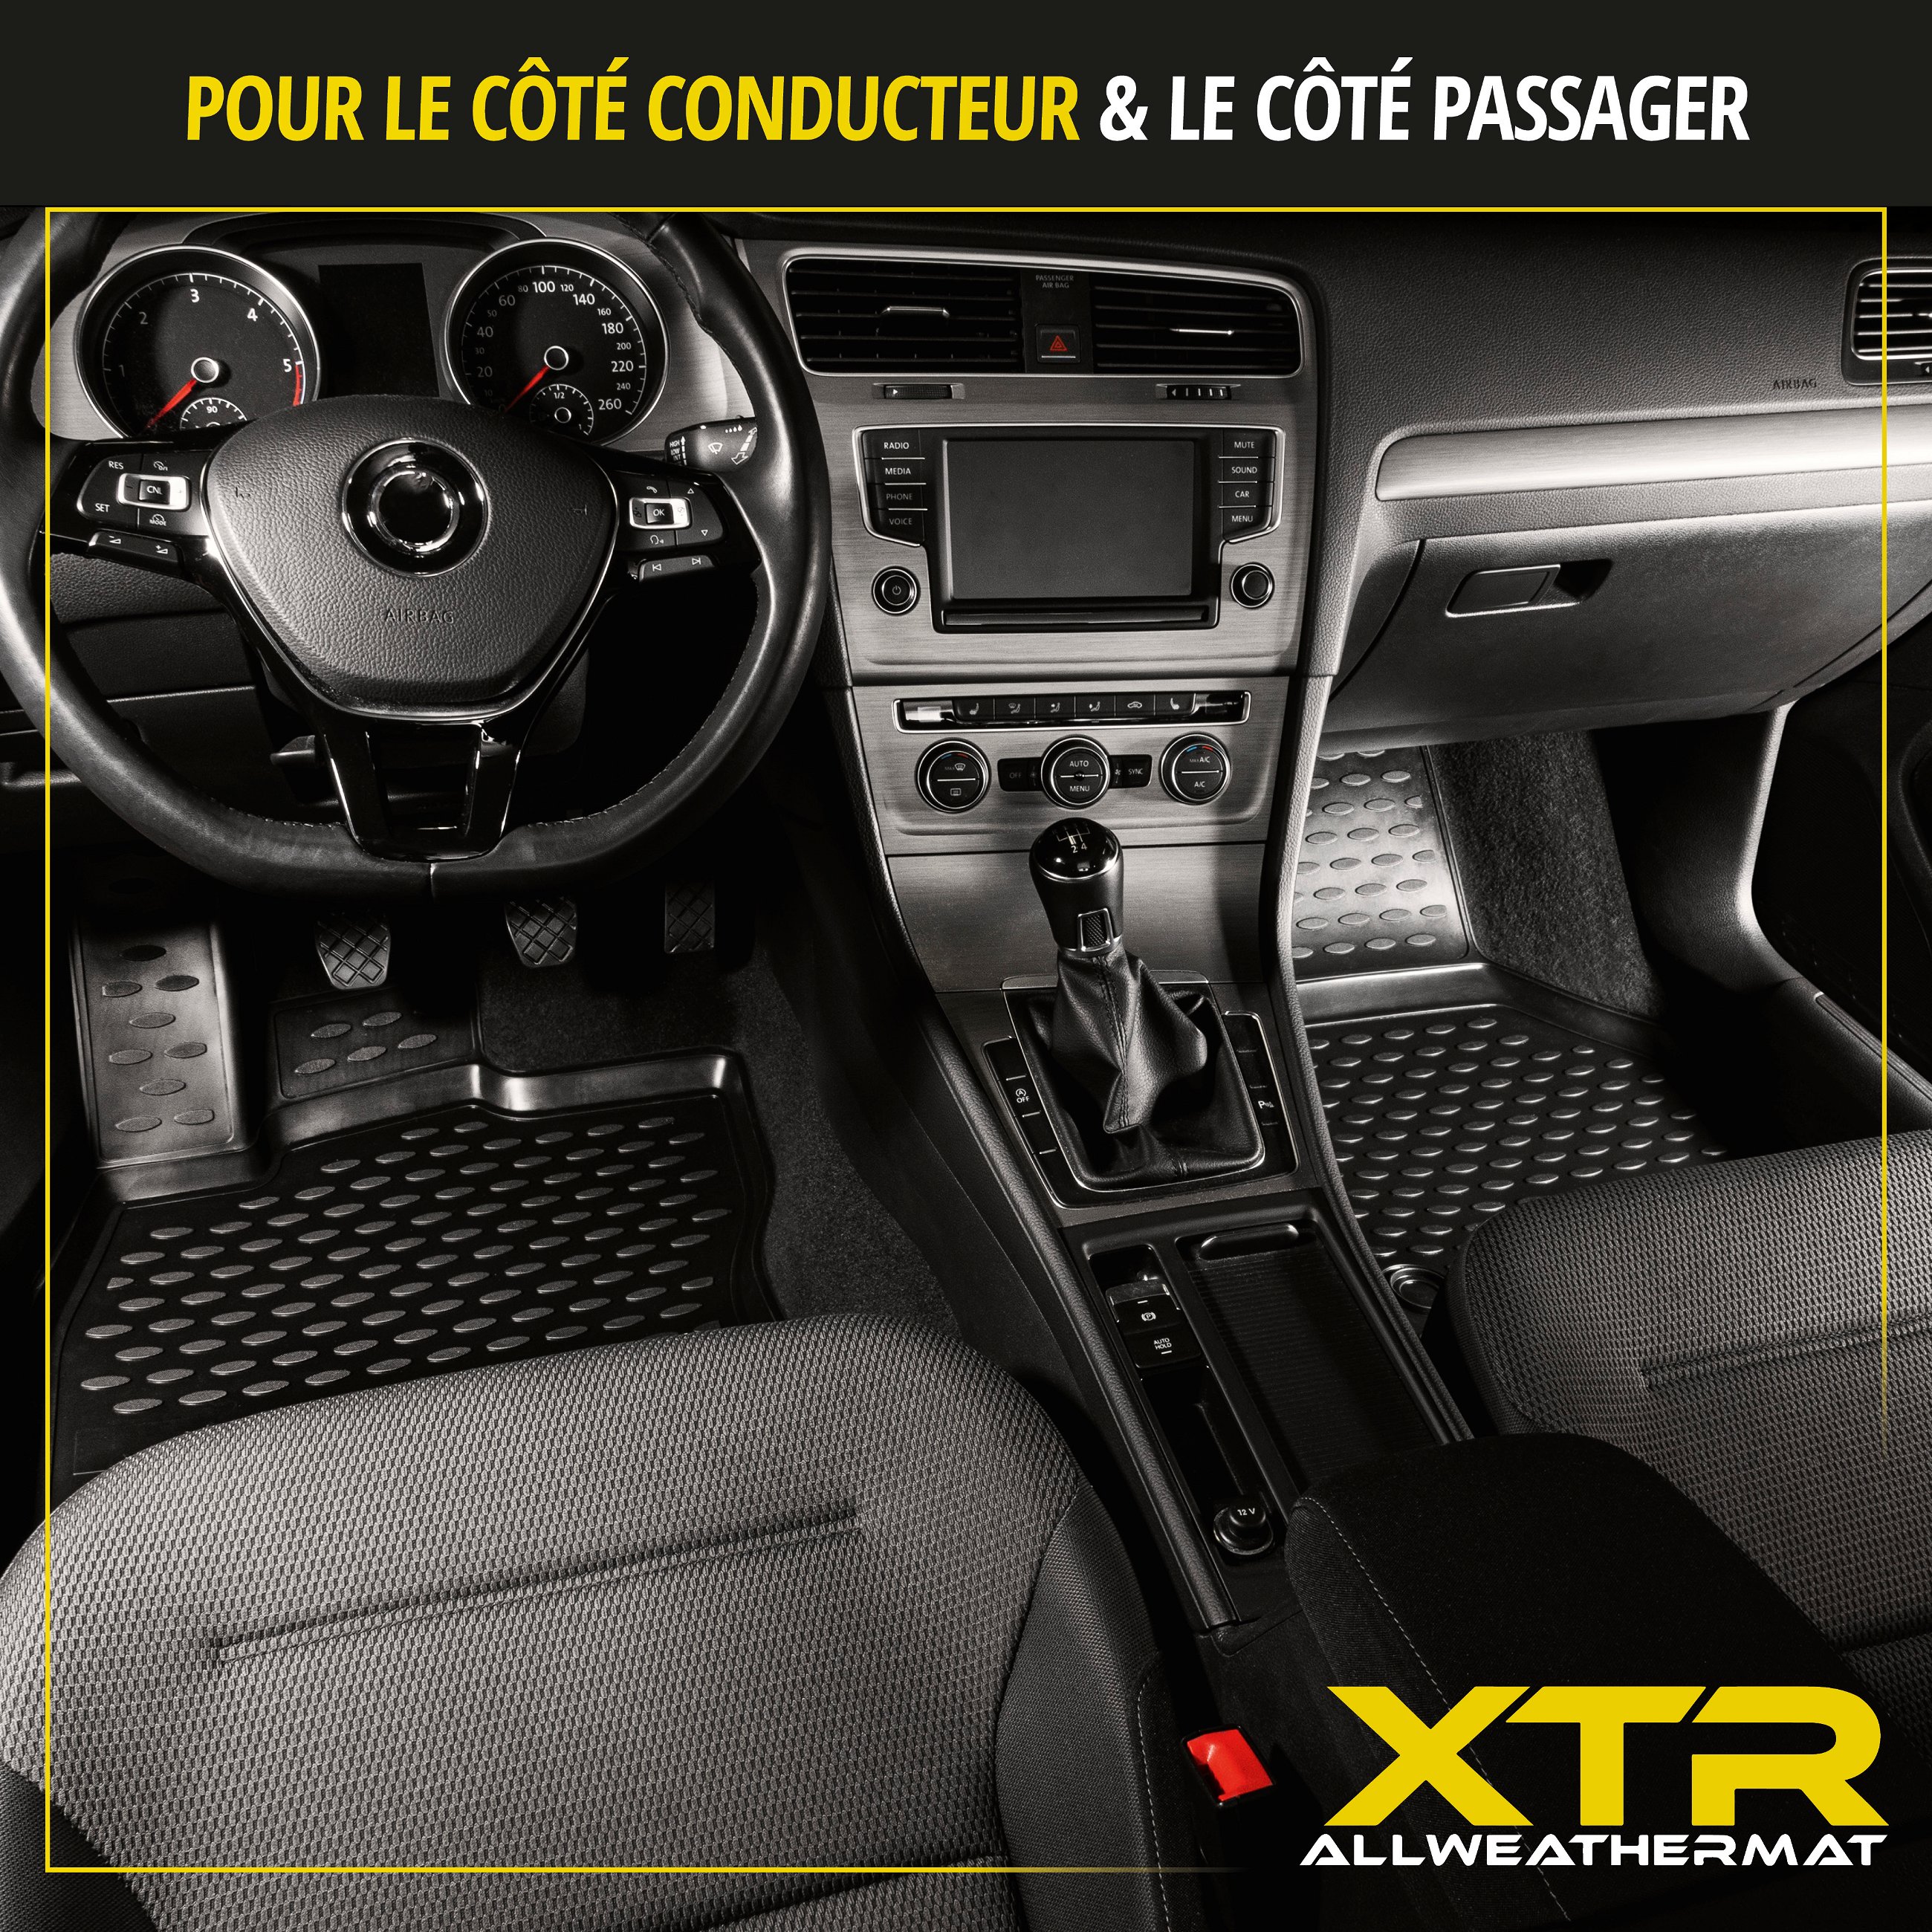 Tapis en caoutchouc XTR pour Audi A4 08/2007 - 12/2015, A4 Avant 11/2007 - 12/2015, A4 Allroad 04/2009 - 05/2016